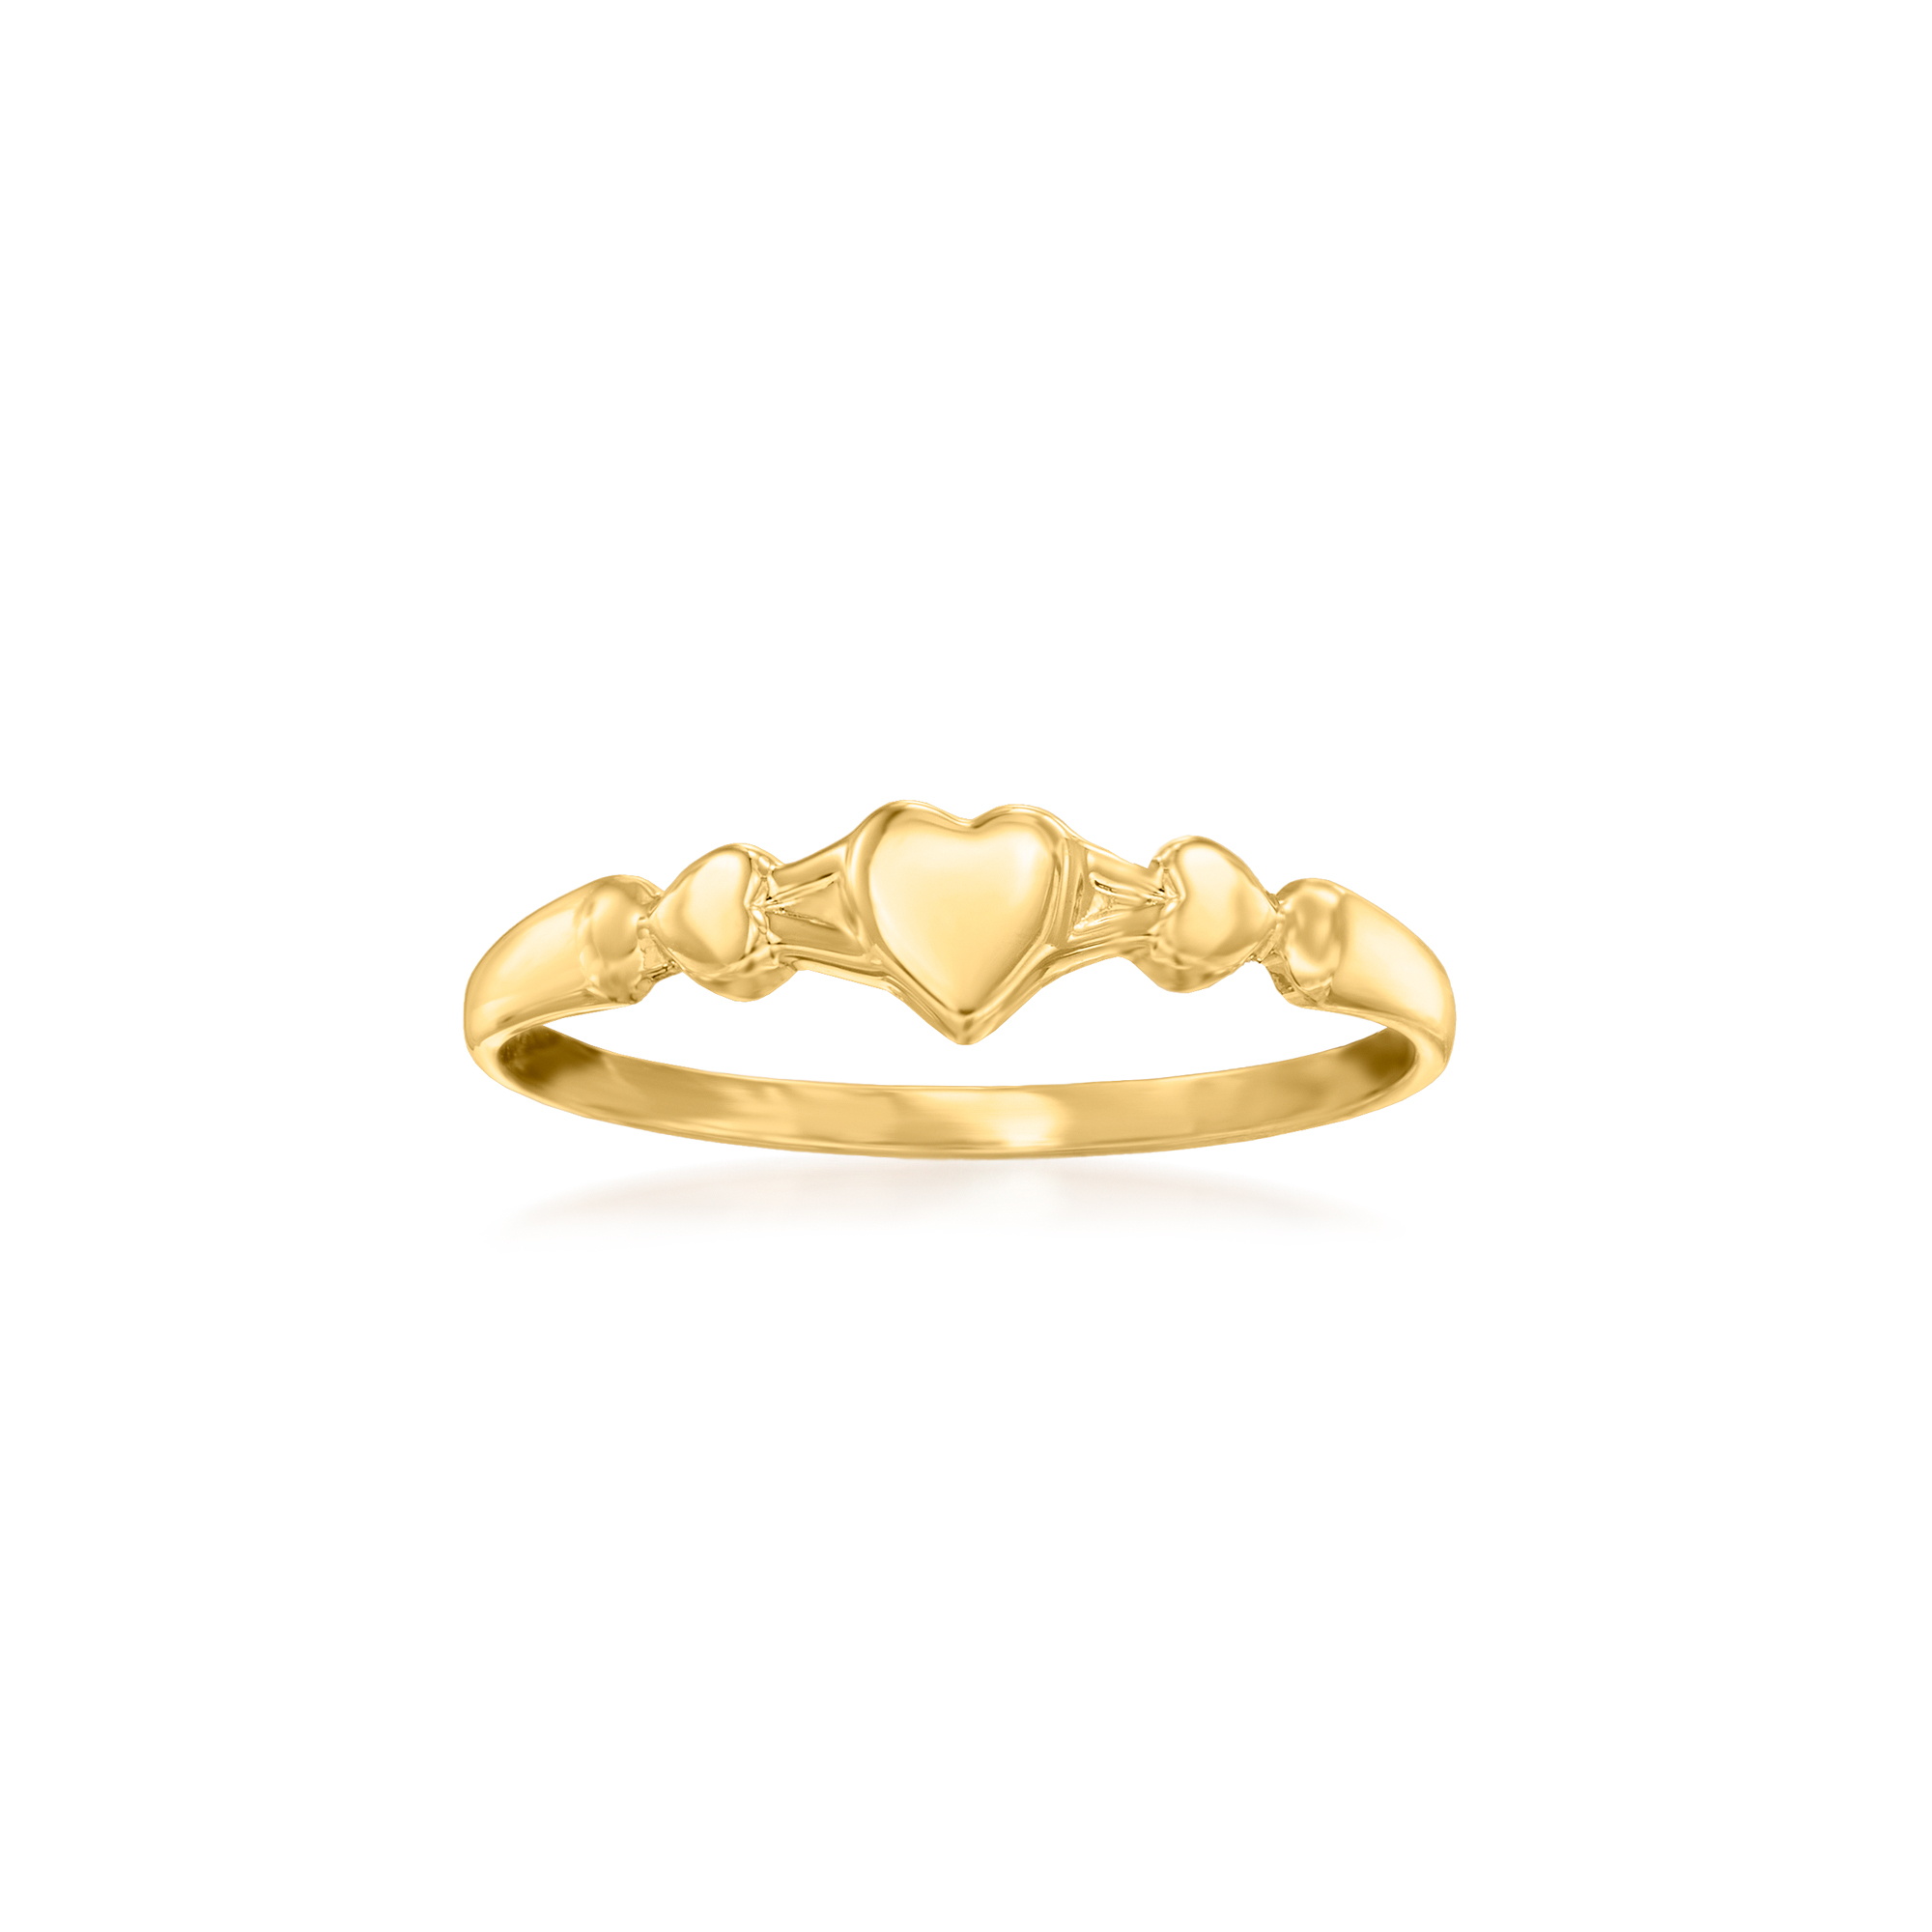 Children's Gold Rings | New Children's Gemstone Rings UK